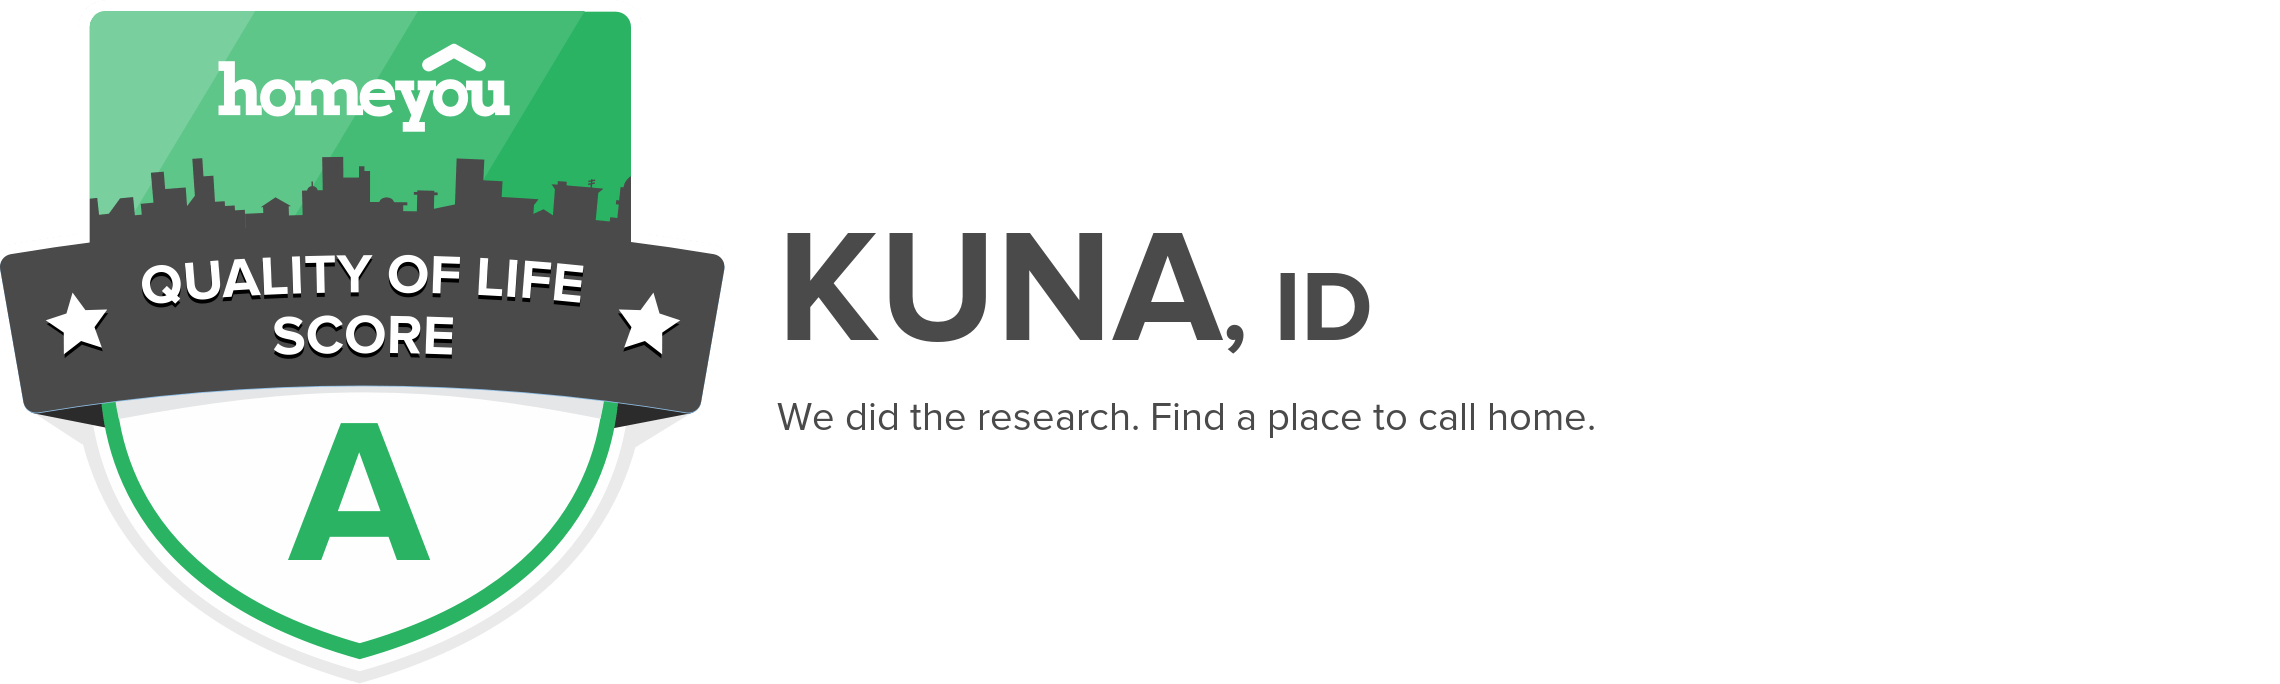 Kuna, ID